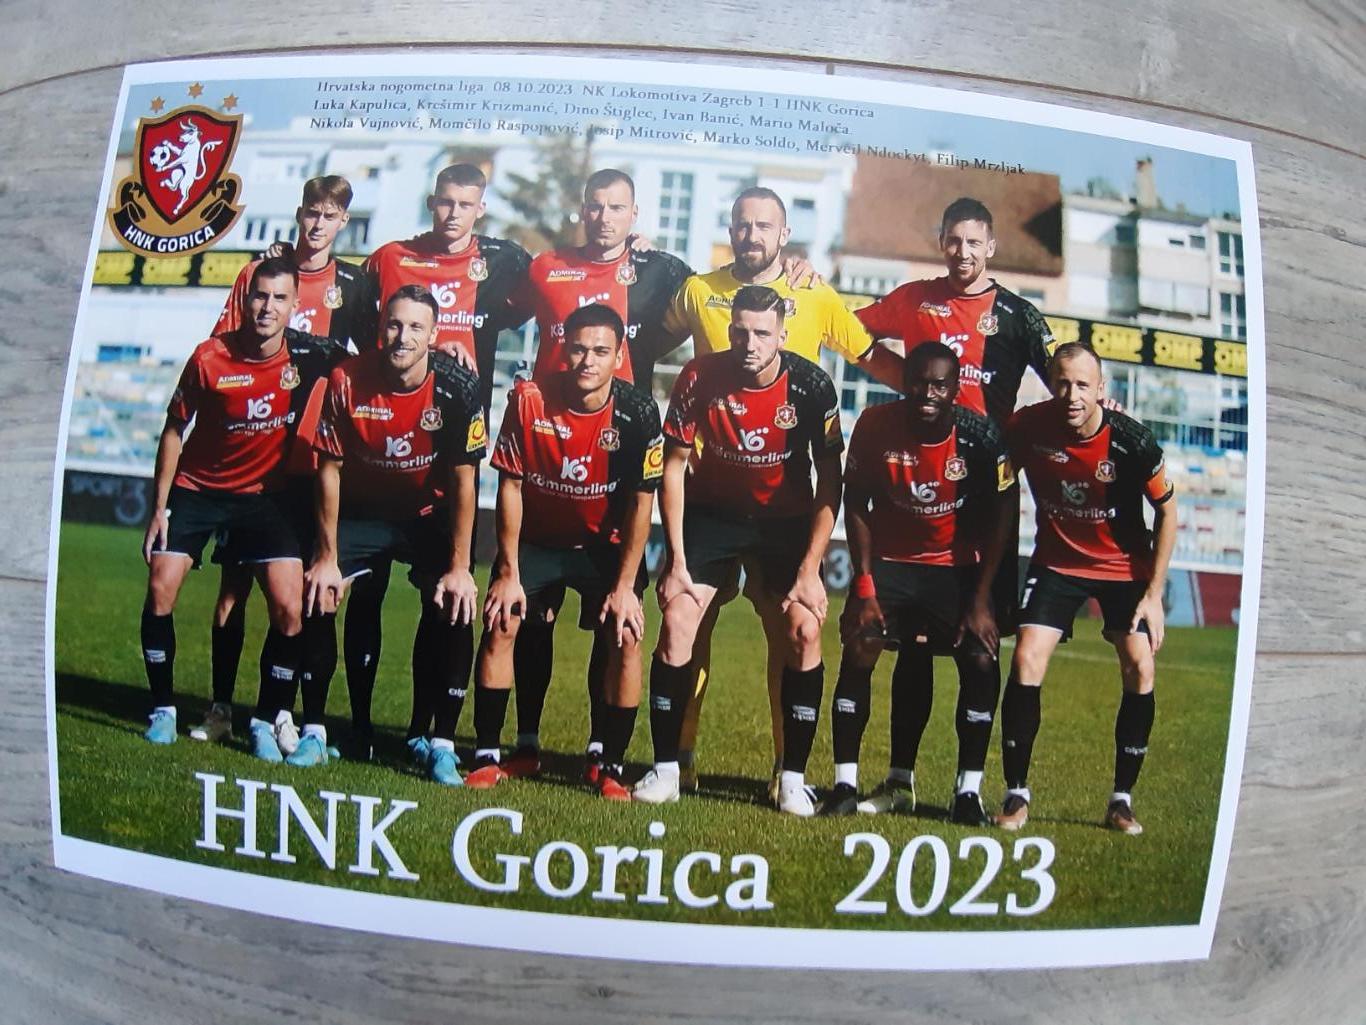 Gorica.2023(Croatia)